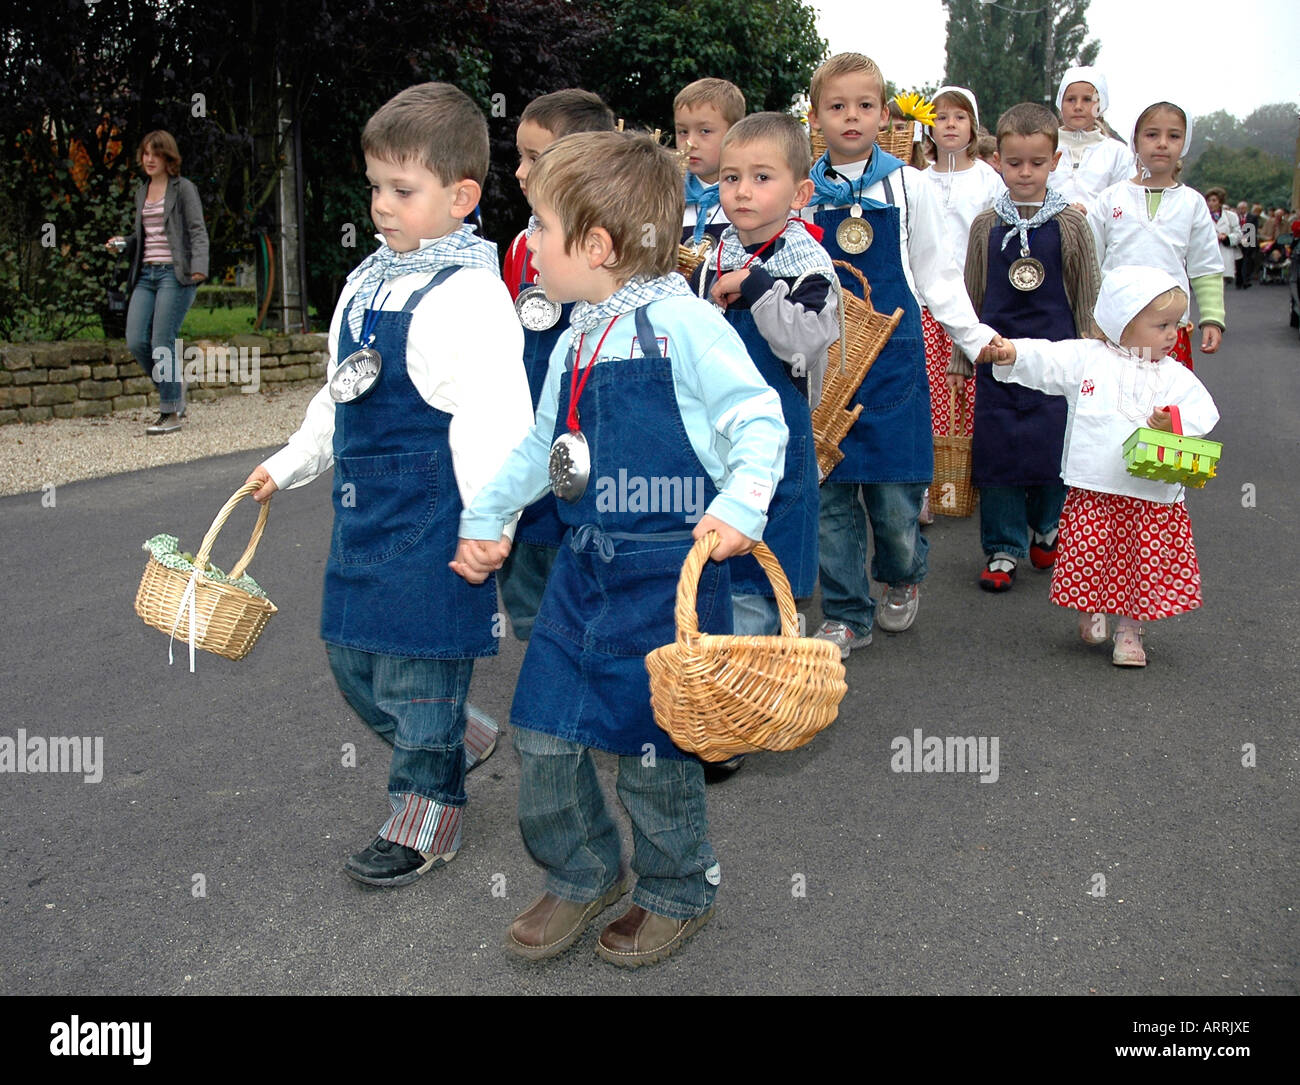 Défilé des enfants dans la fête du vin annuelle, ou biou, dans la région de Pupillin, un village viticole du Jura en France Banque D'Images